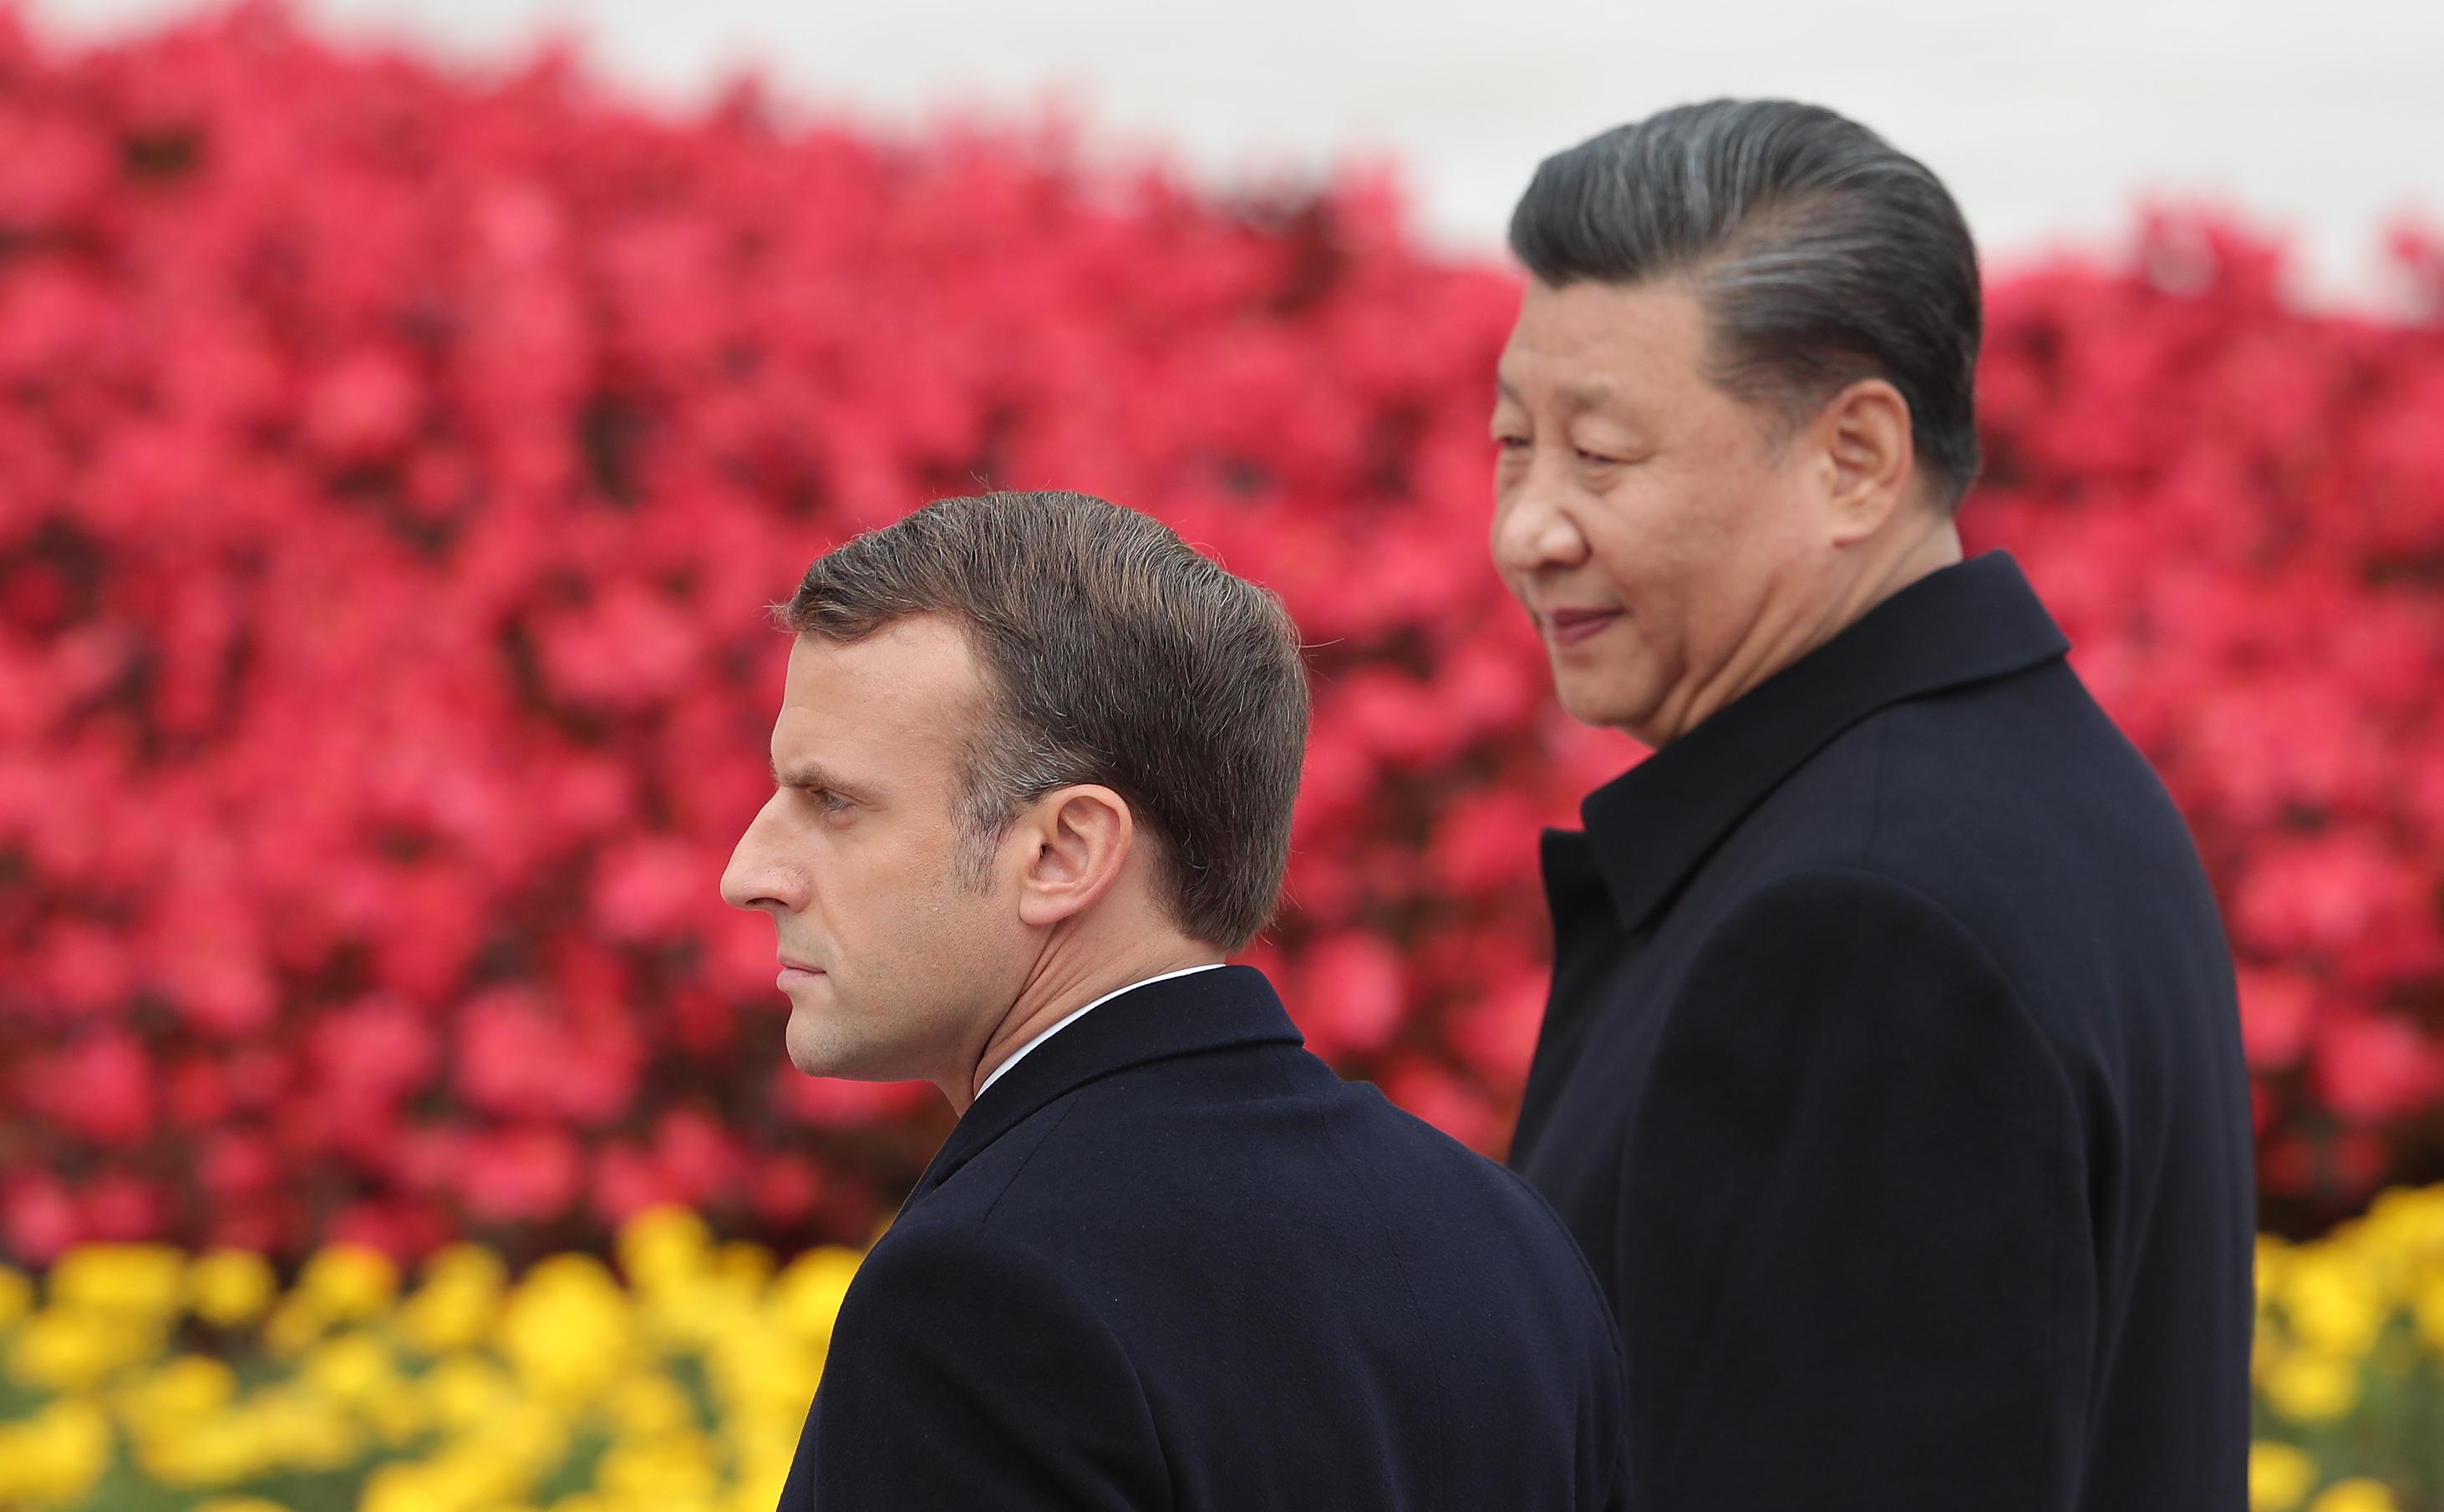 Reuters узнал сентиментальный план Макрона по давлению на Си Цзиньпина